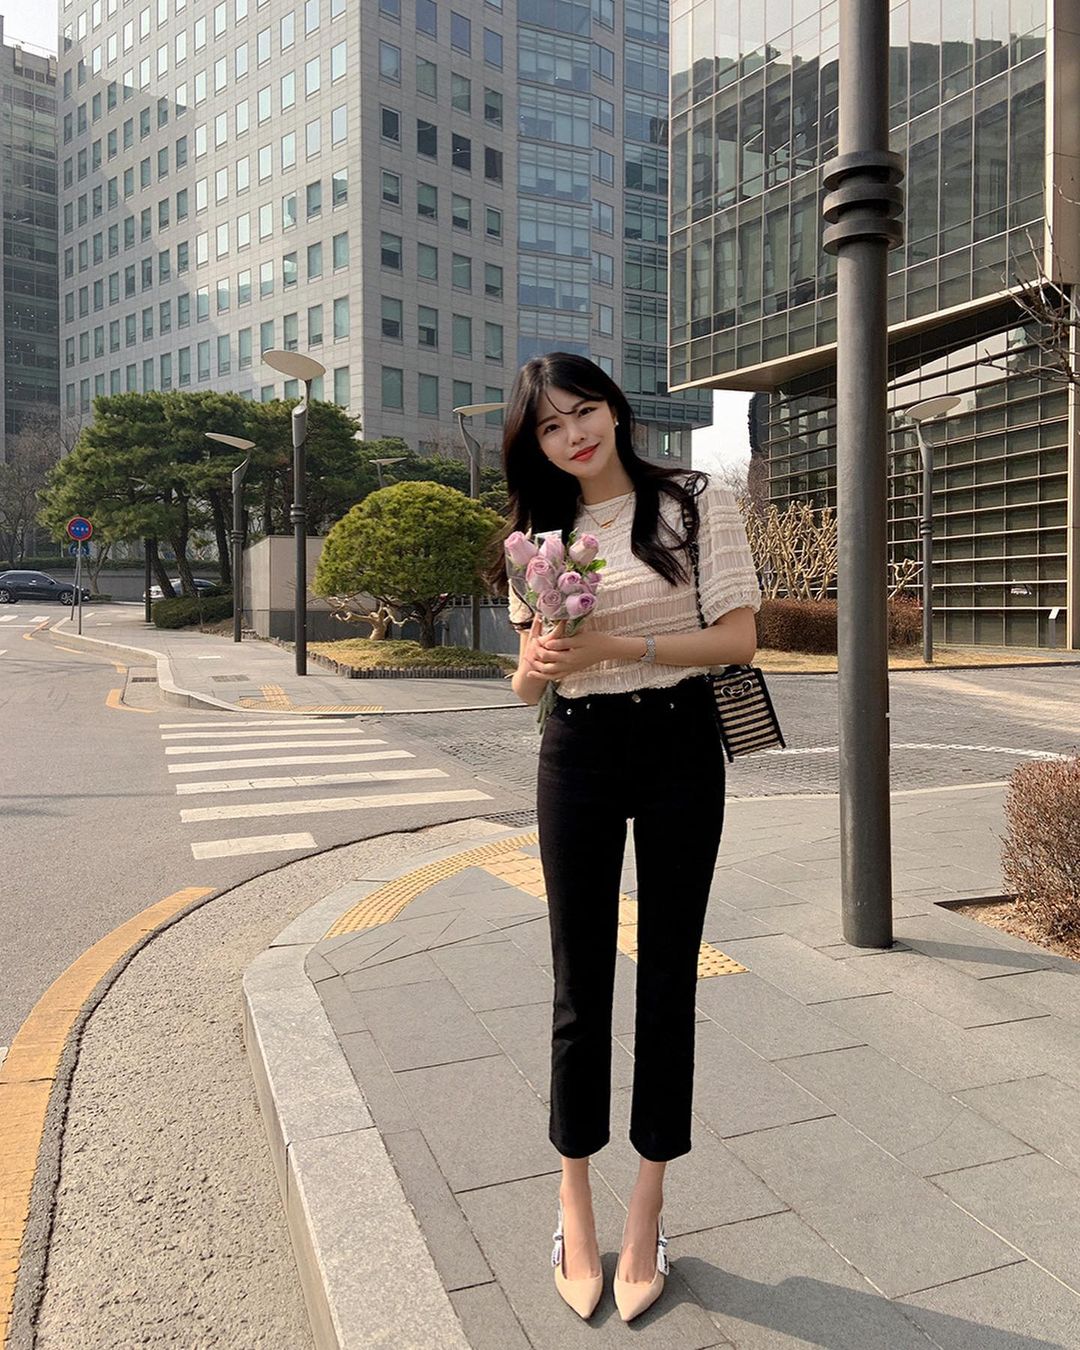 Học nàng blogger Hàn cách diện jeans “đỉnh của chóp”: Vừa hack dáng vừa thanh lịch để diện đến sở làm - Ảnh 7.